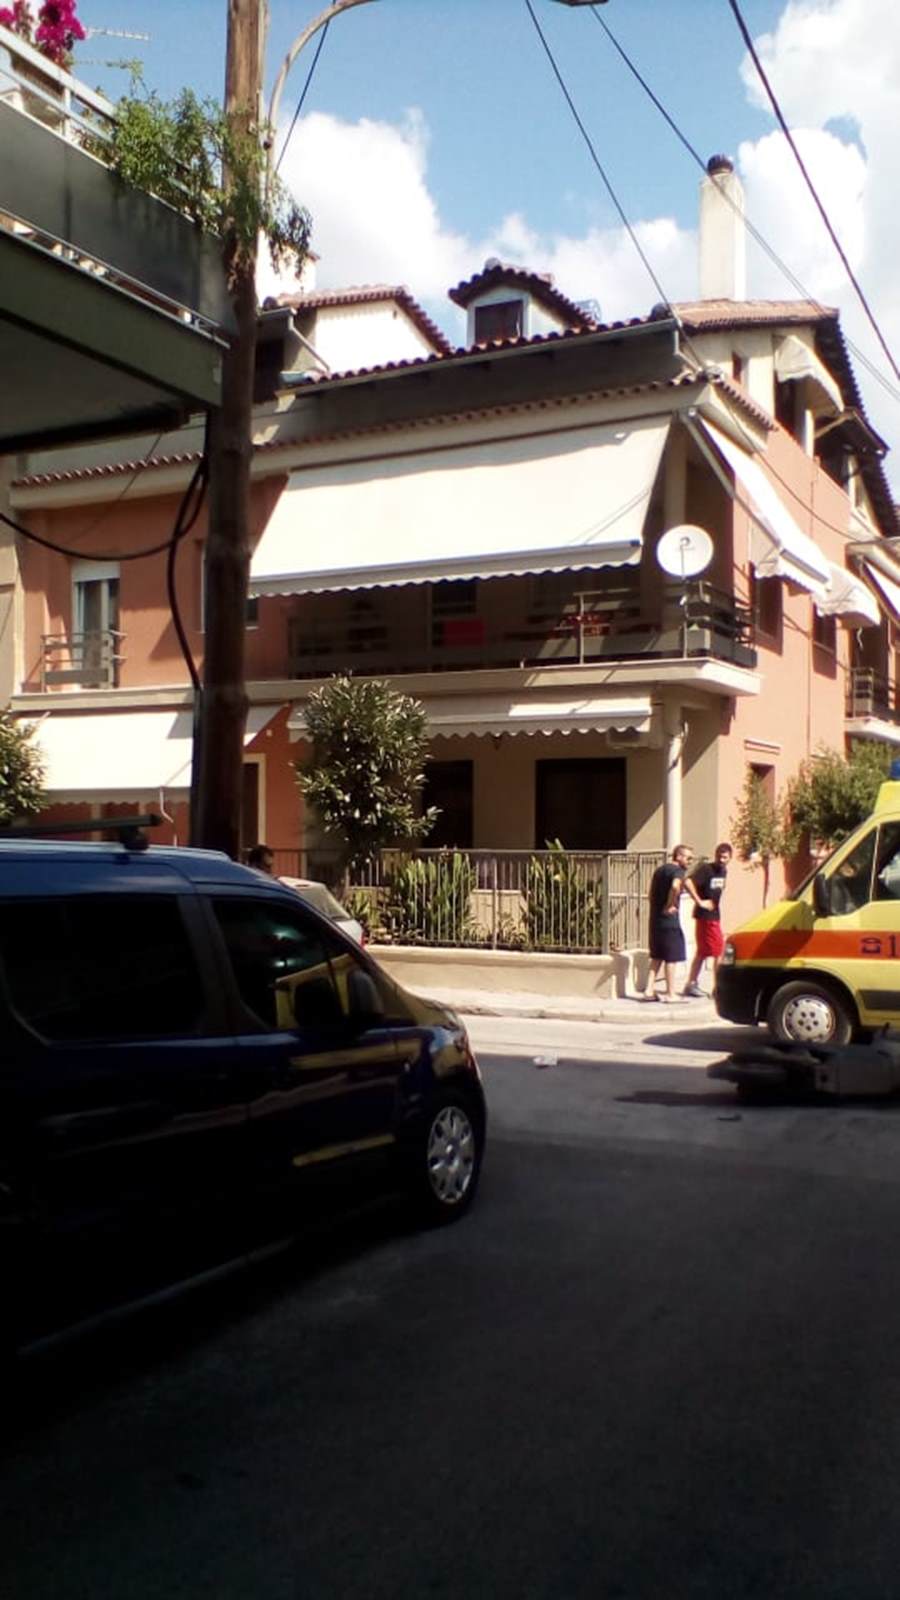 Σύγκρουση ΙΧ αυτοκινήτου με μοτοσικλέτα στη Λάρισα – Στο Πανεπιστημιακό Νοσοκομείο ένας τραυματίας (φωτο)